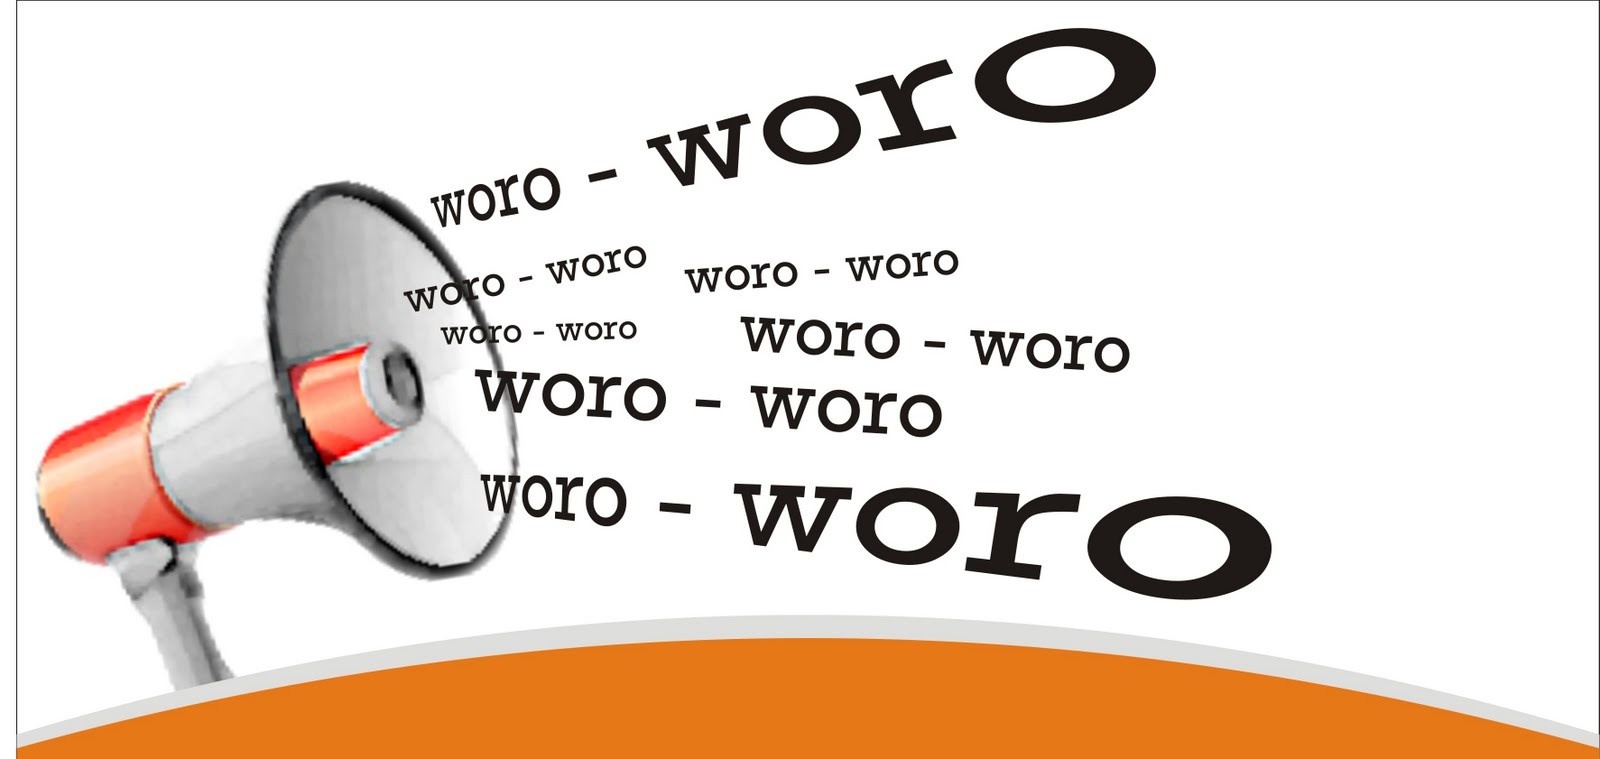 Contoh Woro Woro dalam Bahasa Jawa - InfoTugas